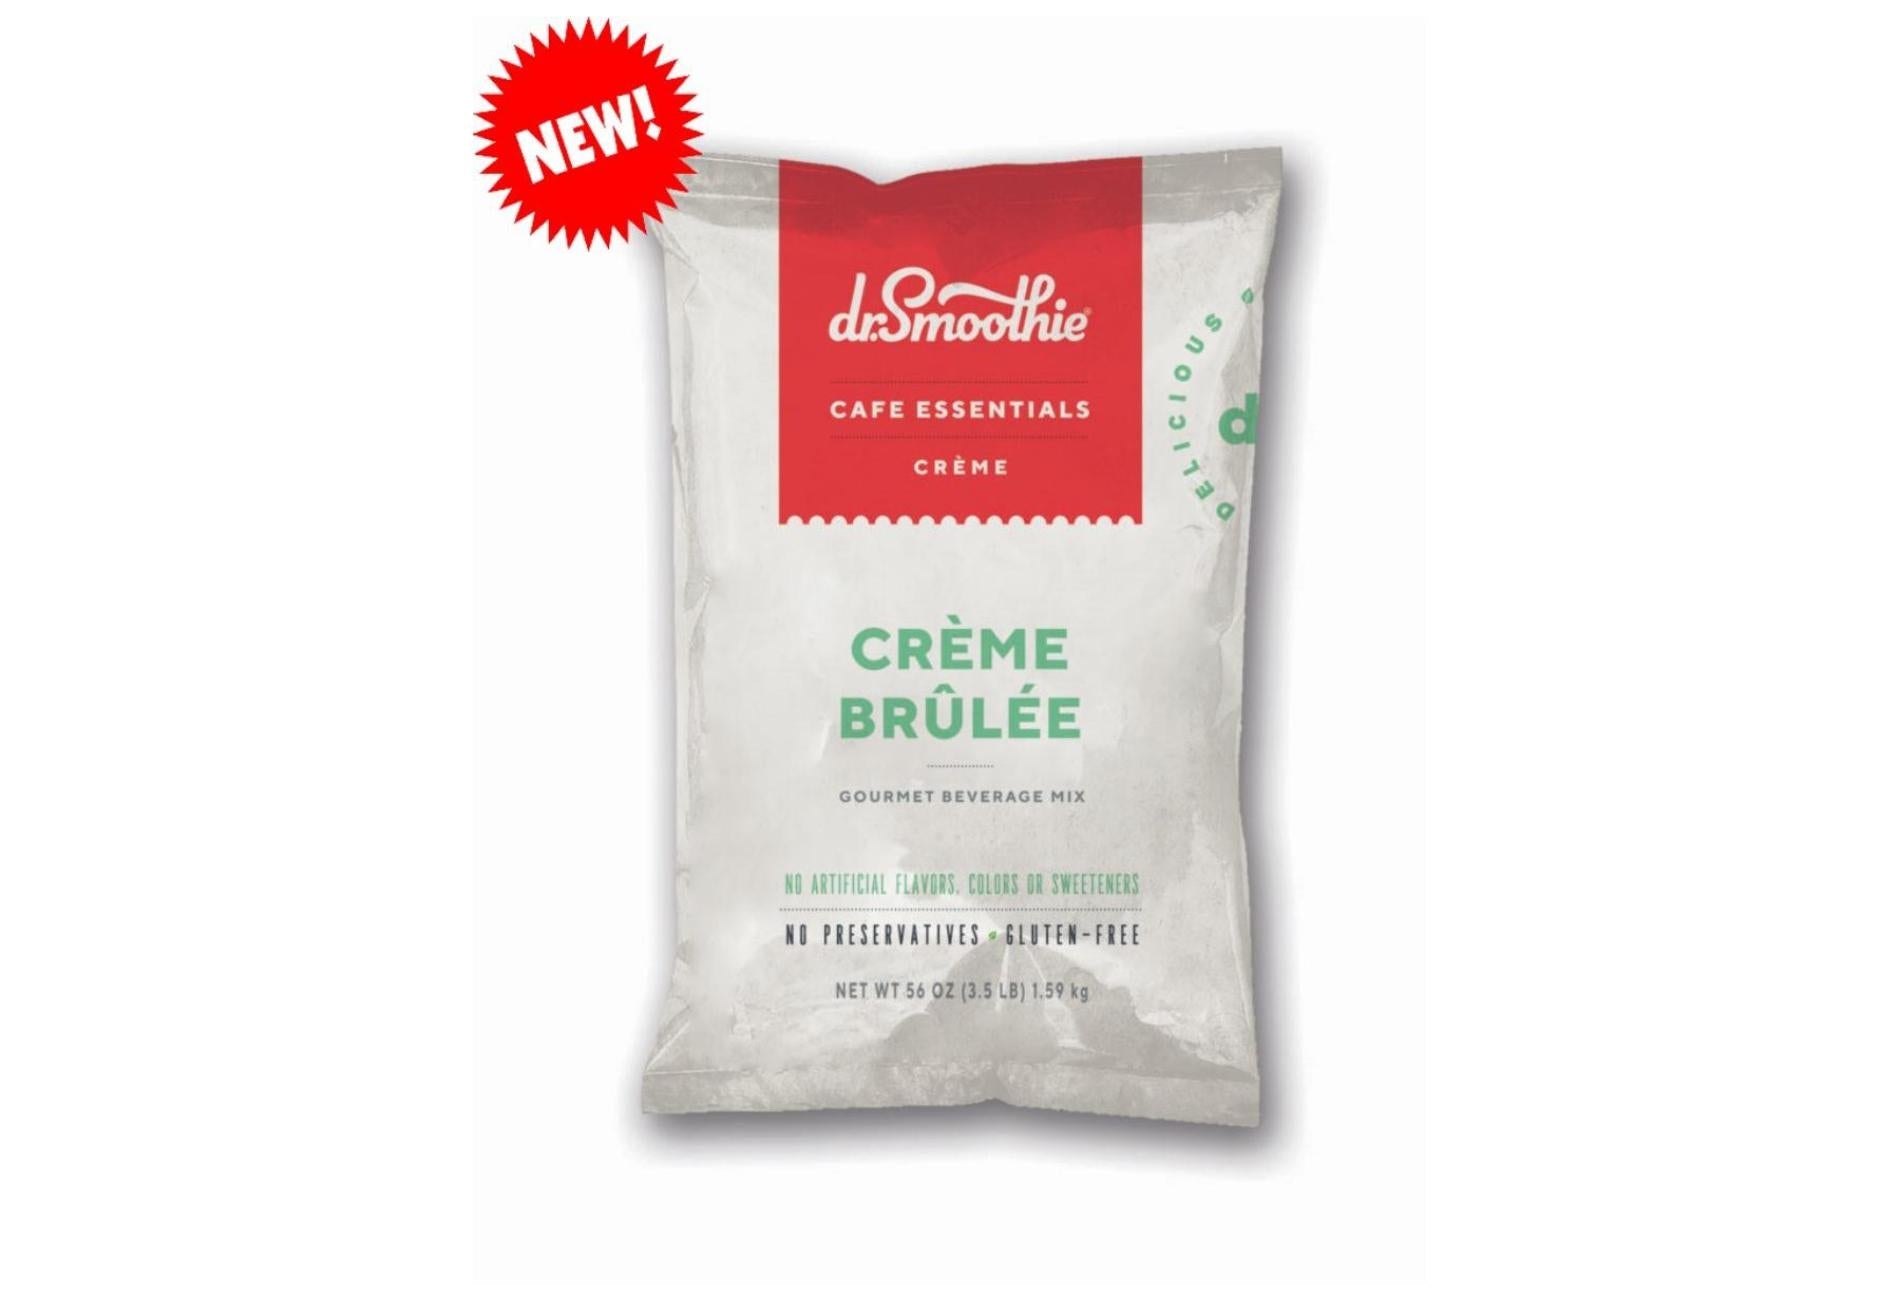 Dr. Smoothie Cafe Essentials Creme - 3.5lb Bulk Bag: Creme Brulee